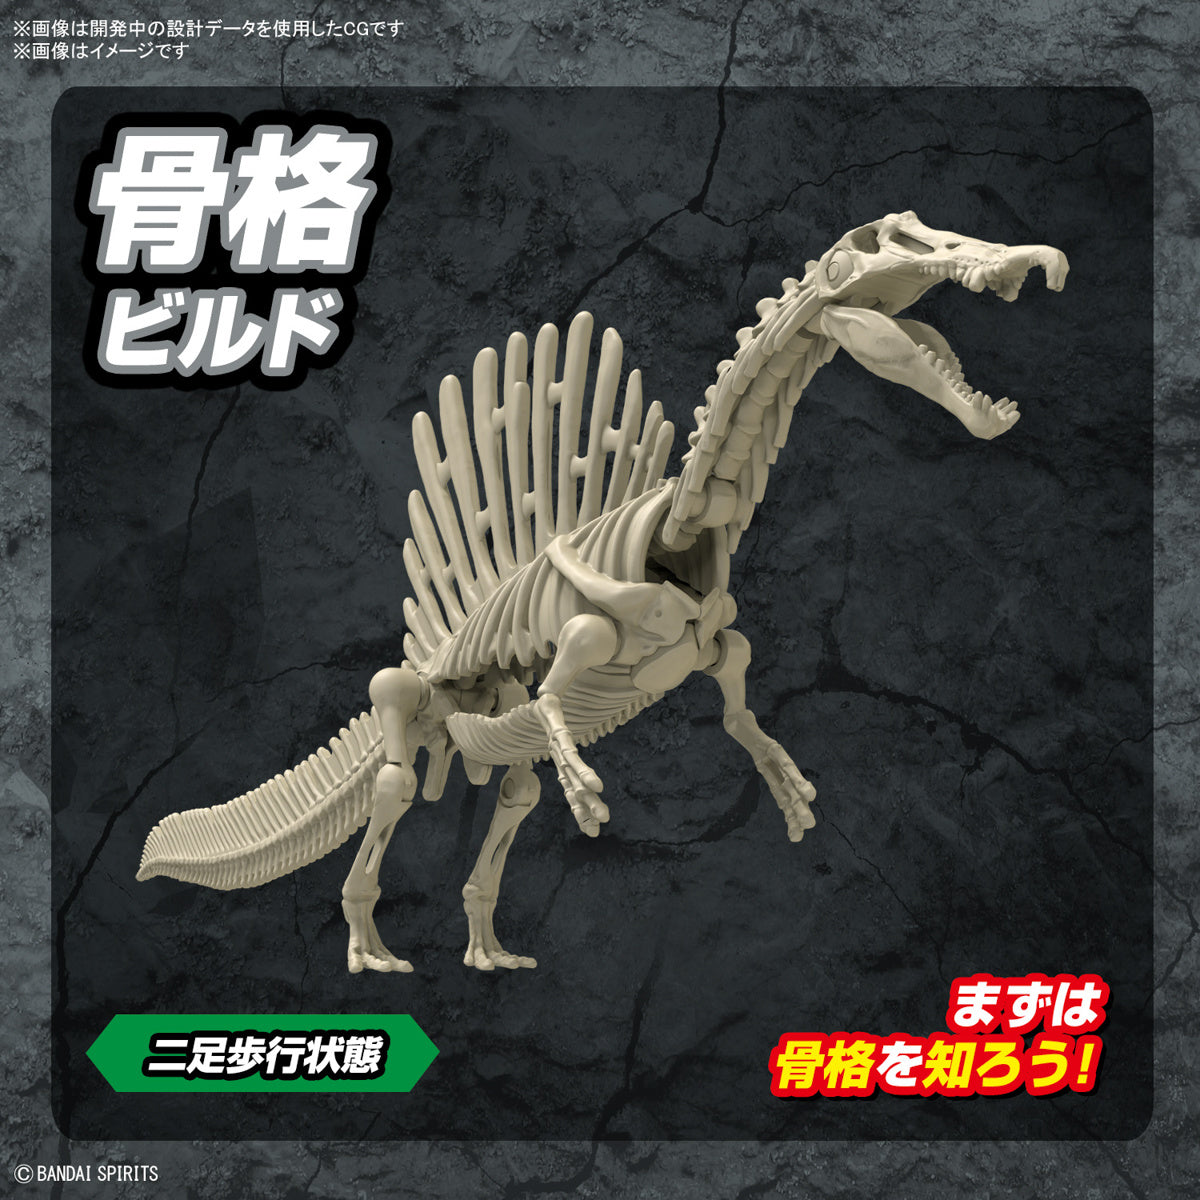 Plannosaurus Spinosaurus